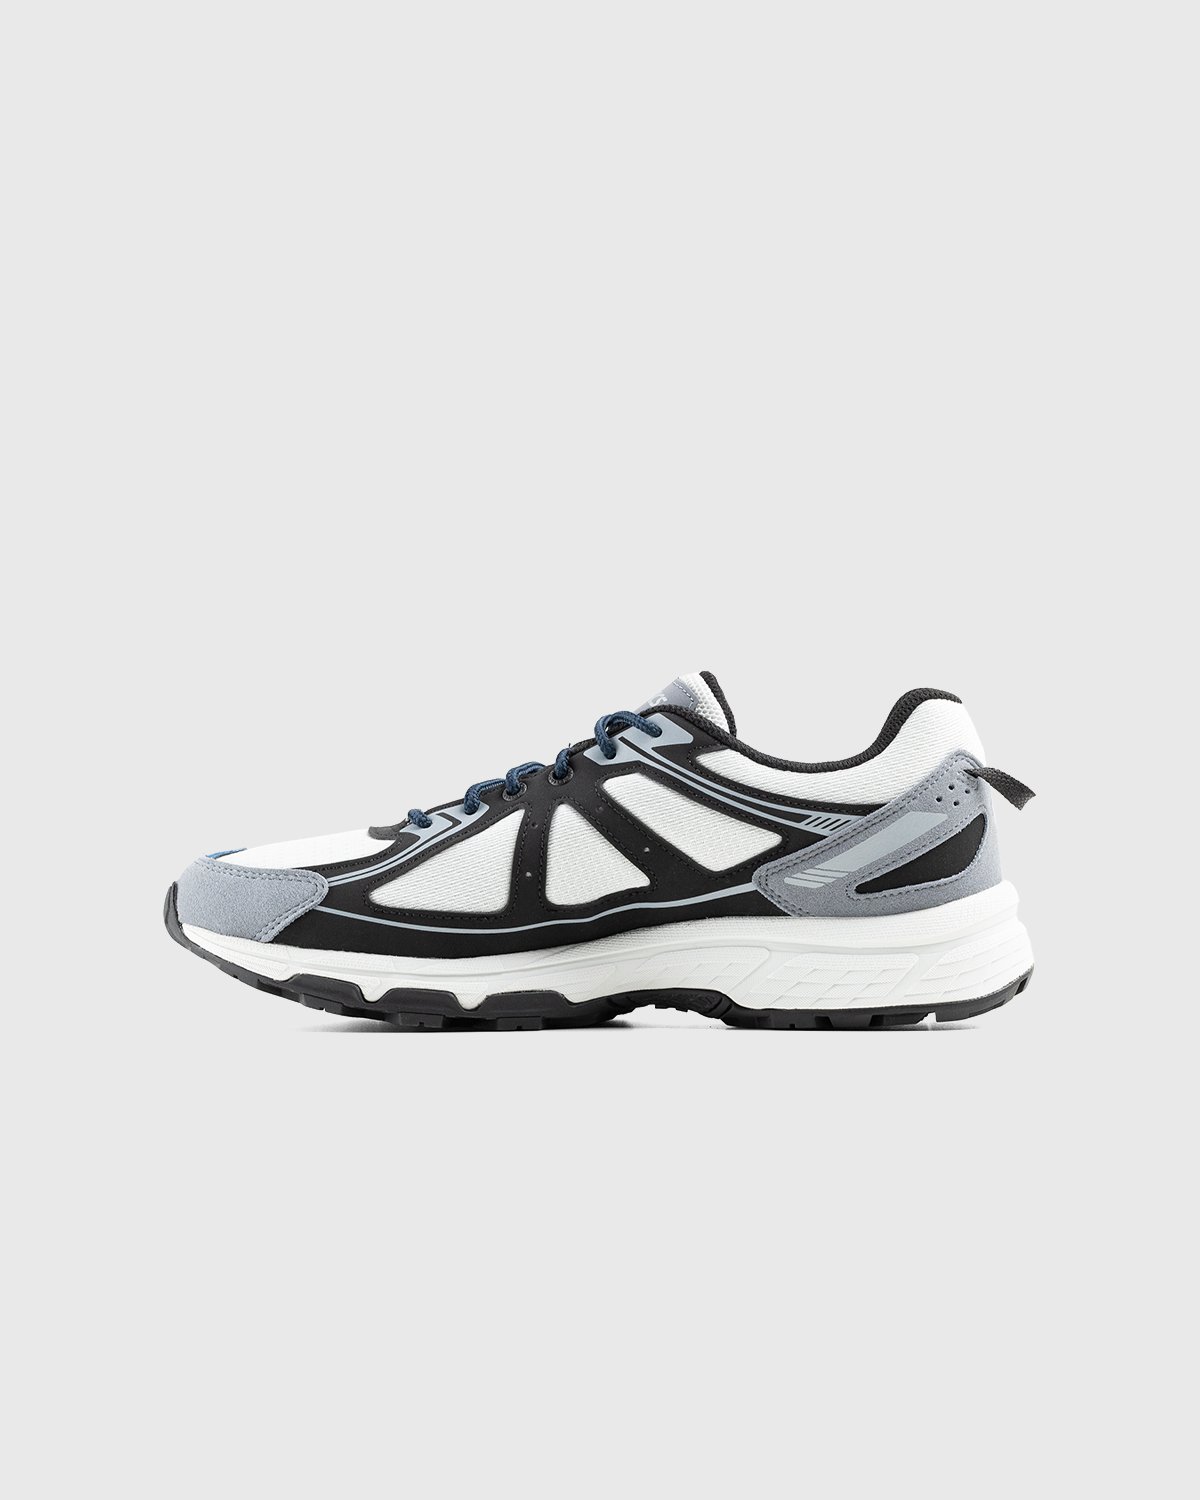 asics - Gel-Venture 6 Glacier Grey Black - Footwear - Grey - Image 2